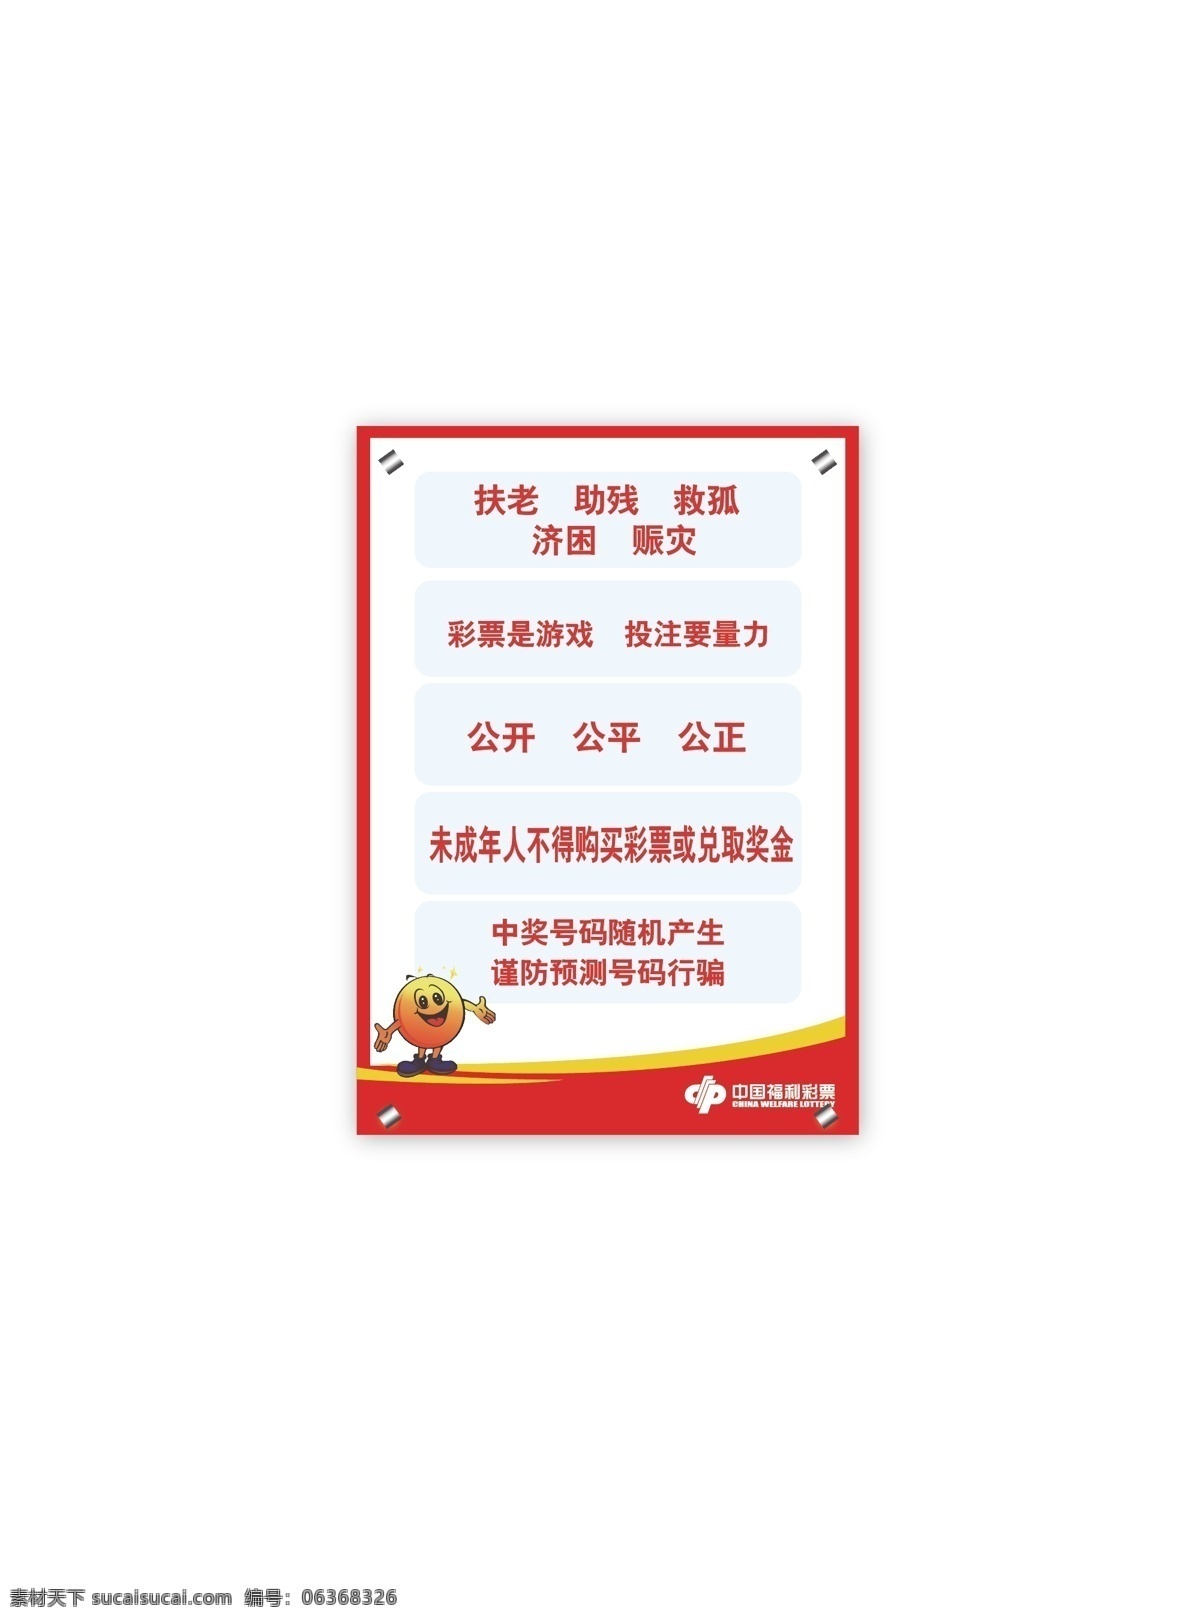 中国 福利彩票 中国福利彩票 标志 展板 矢量 其他海报设计